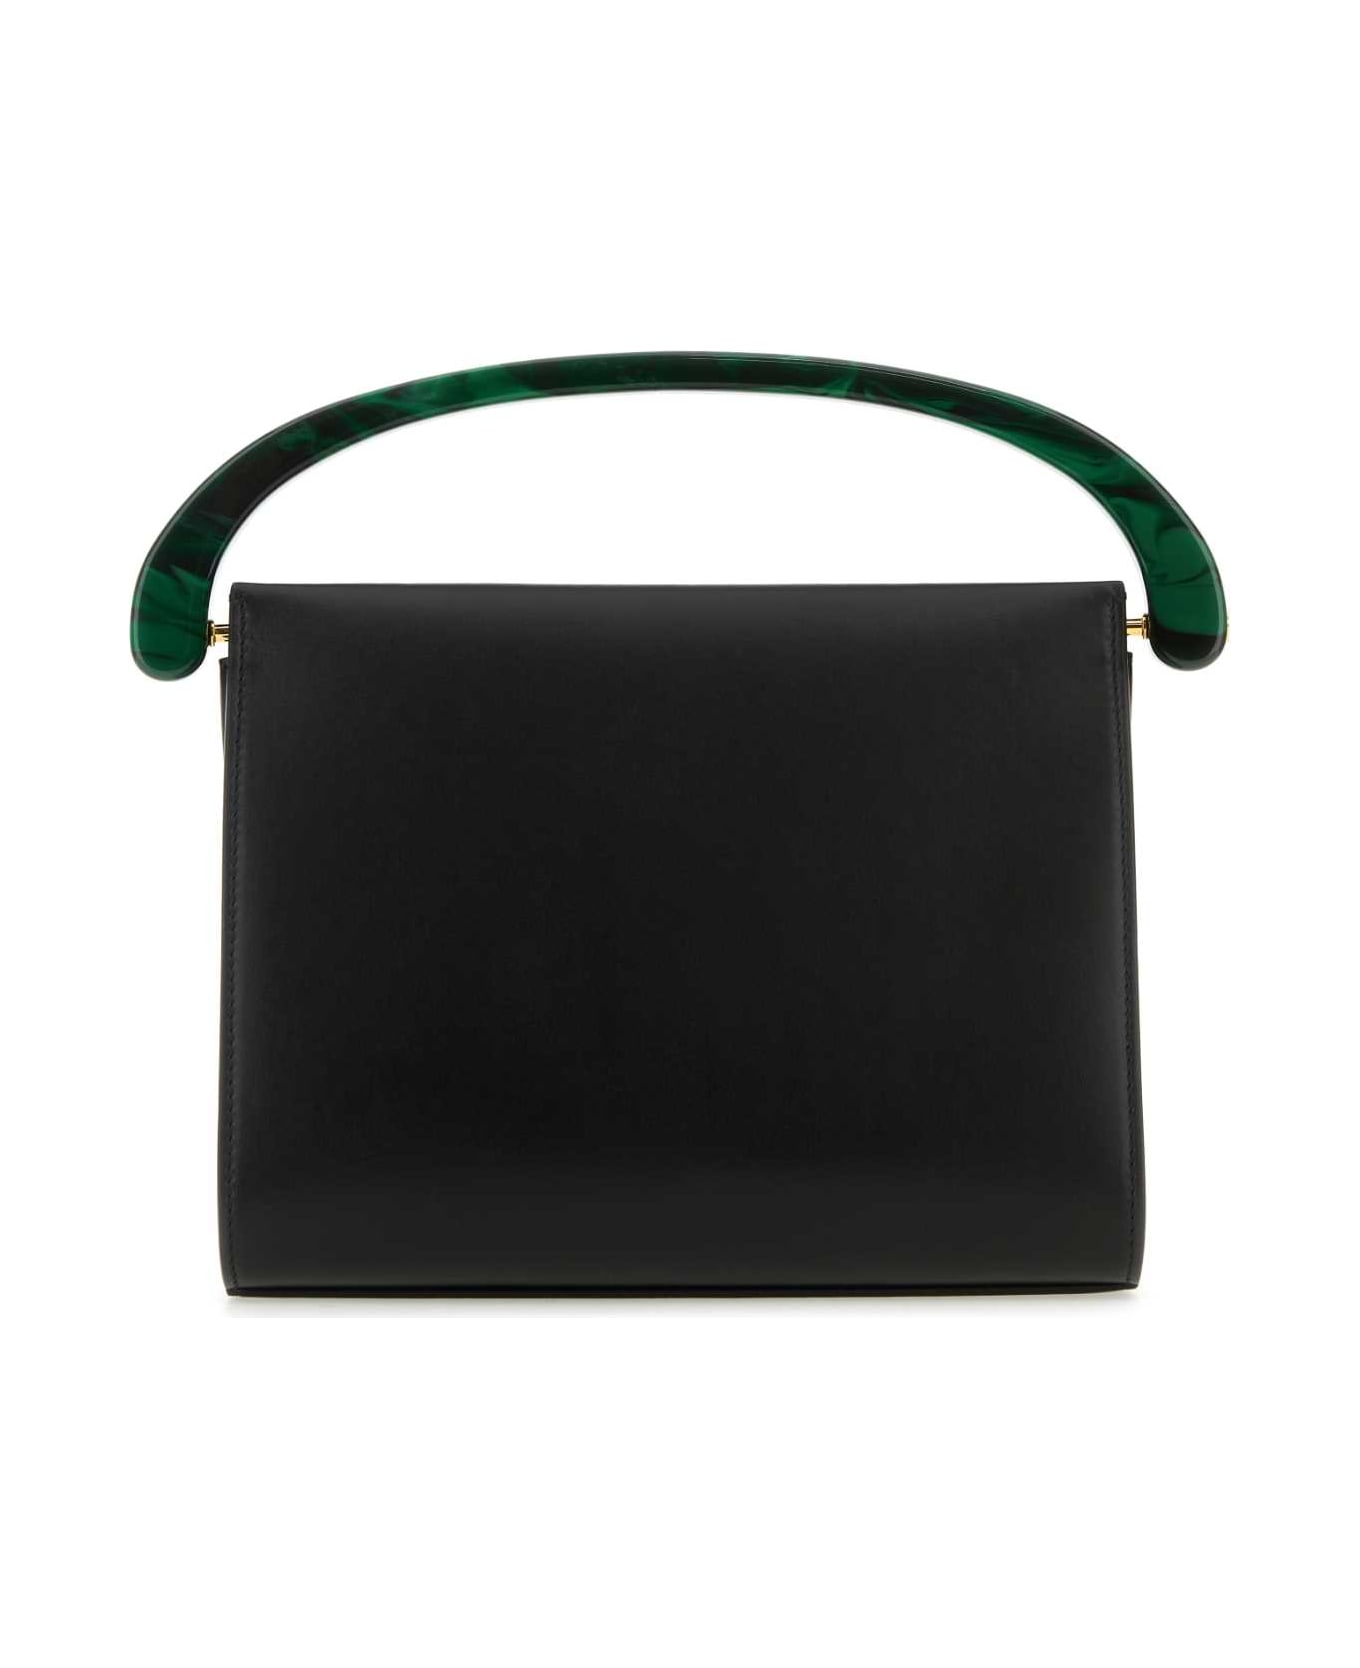 Dries Van Noten Black Leather Handbag - BLACK